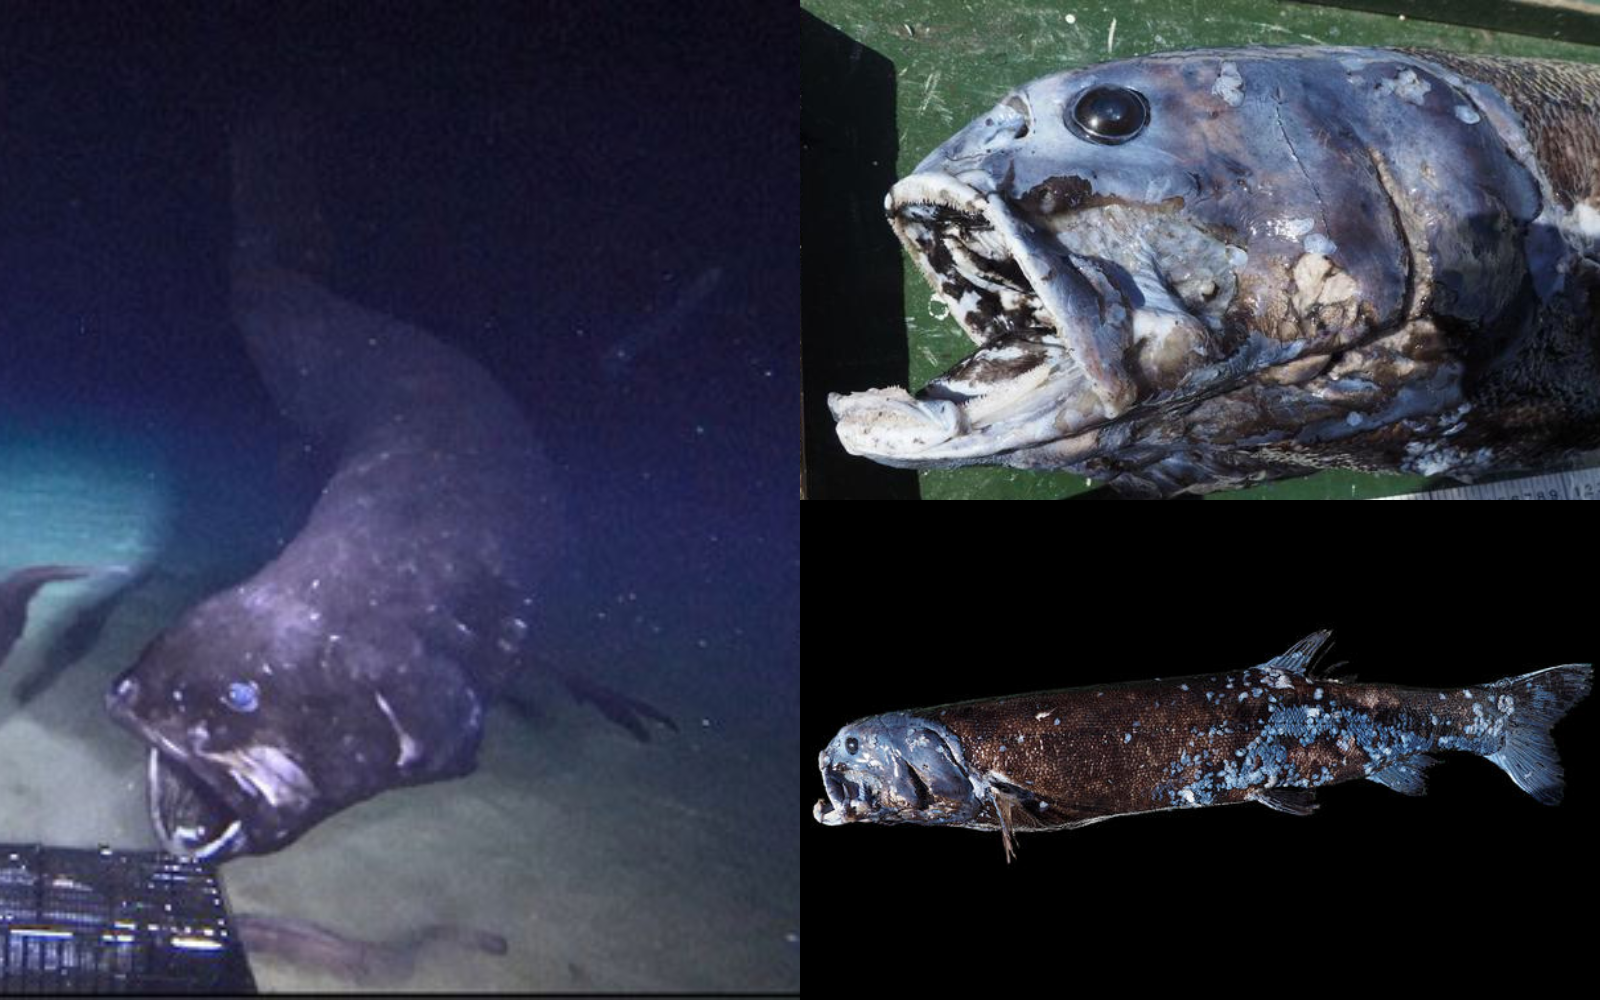 "Đại vương" săn mồi của vùng biển Nhật: Thân hình "bé bự", thống trị ở độ sâu 2.000 mét nước